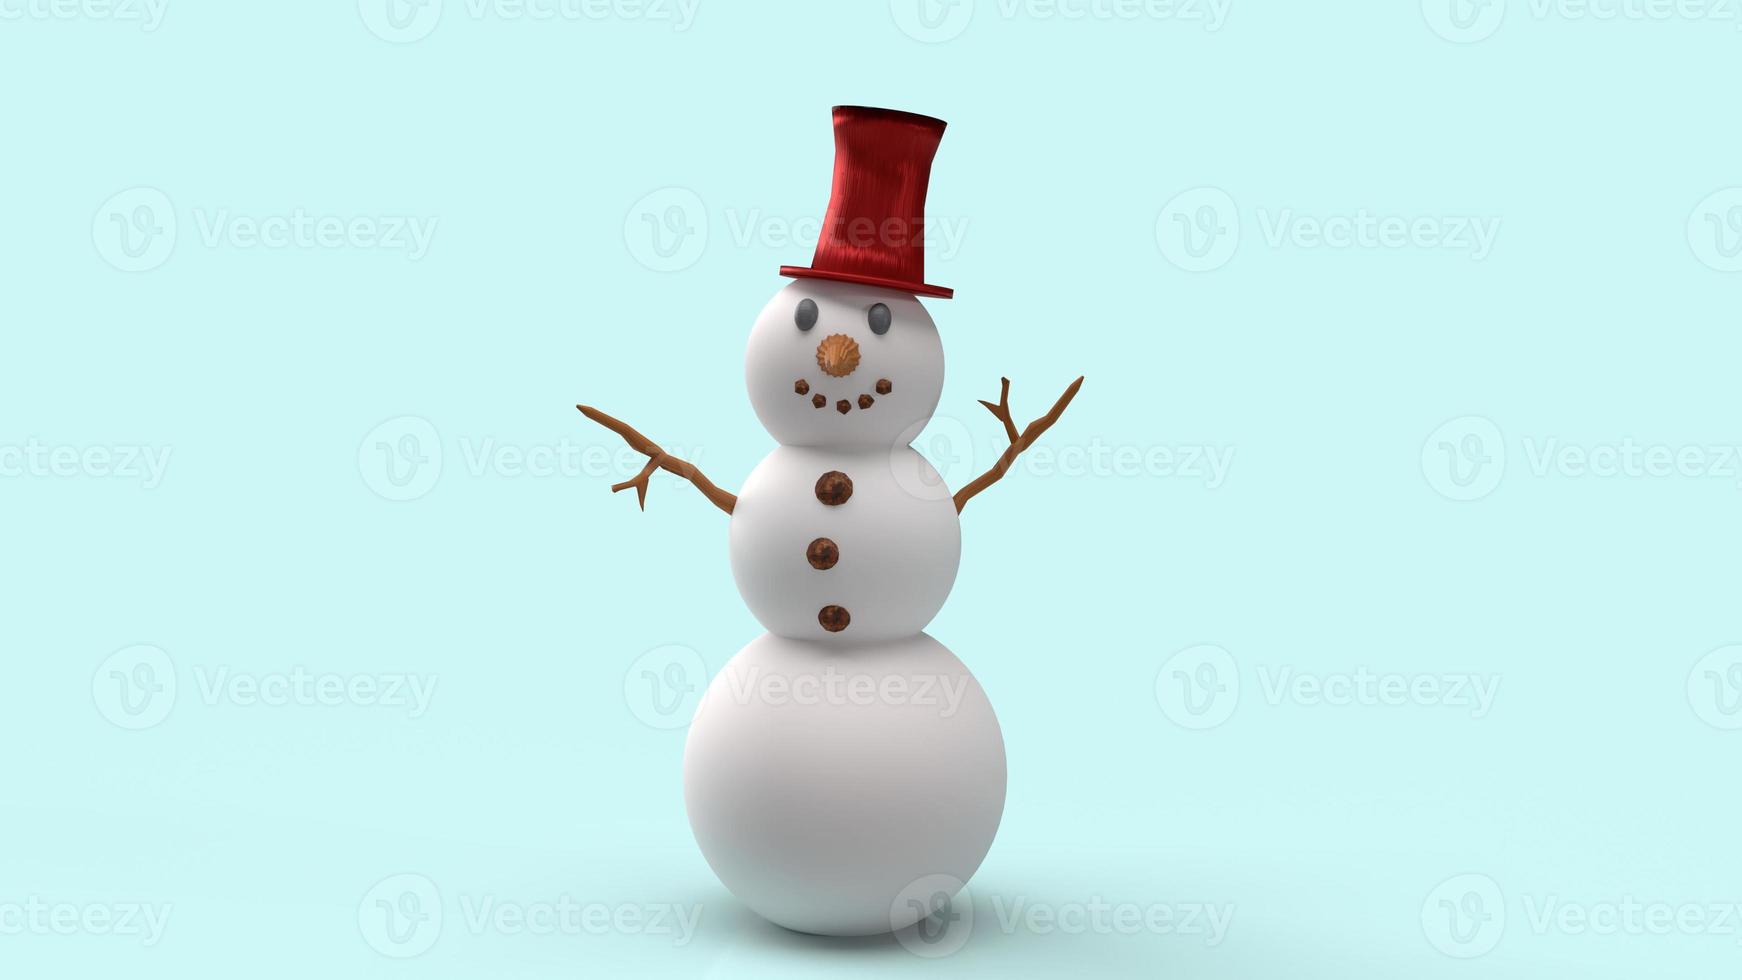 boneco de neve em fundo azul para renderização em 3d de conteúdo de natal. foto